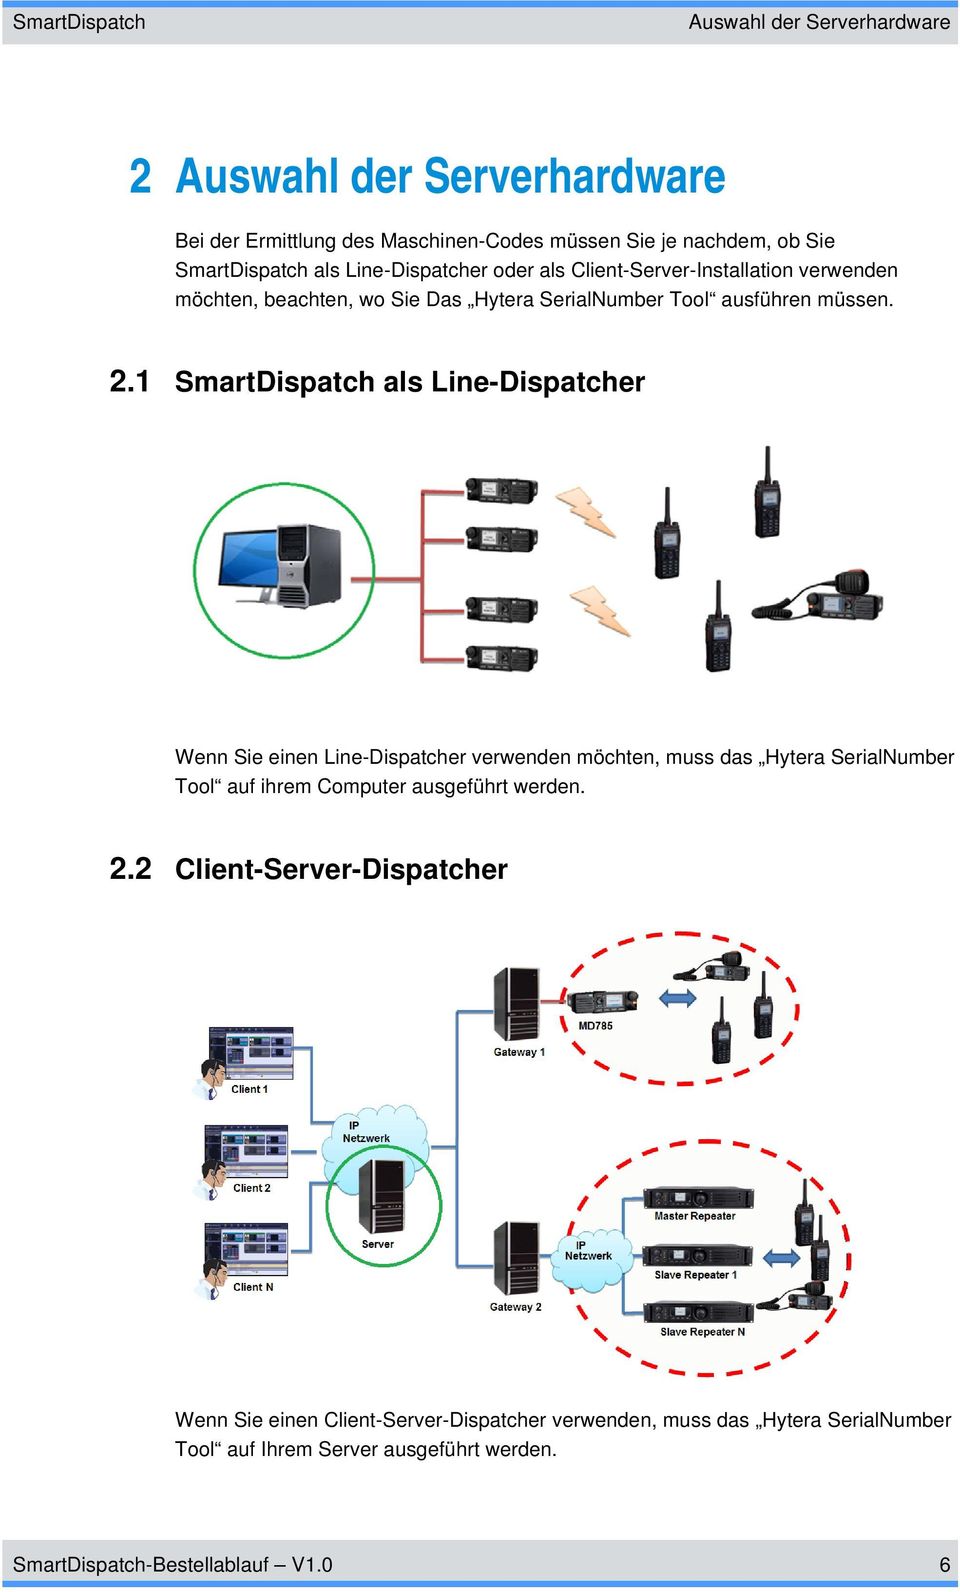 1 SmartDispatch als Line-Dispatcher Wenn Sie einen Line-Dispatcher verwenden möchten, muss das Hytera SerialNumber Tool auf ihrem Computer ausgeführt